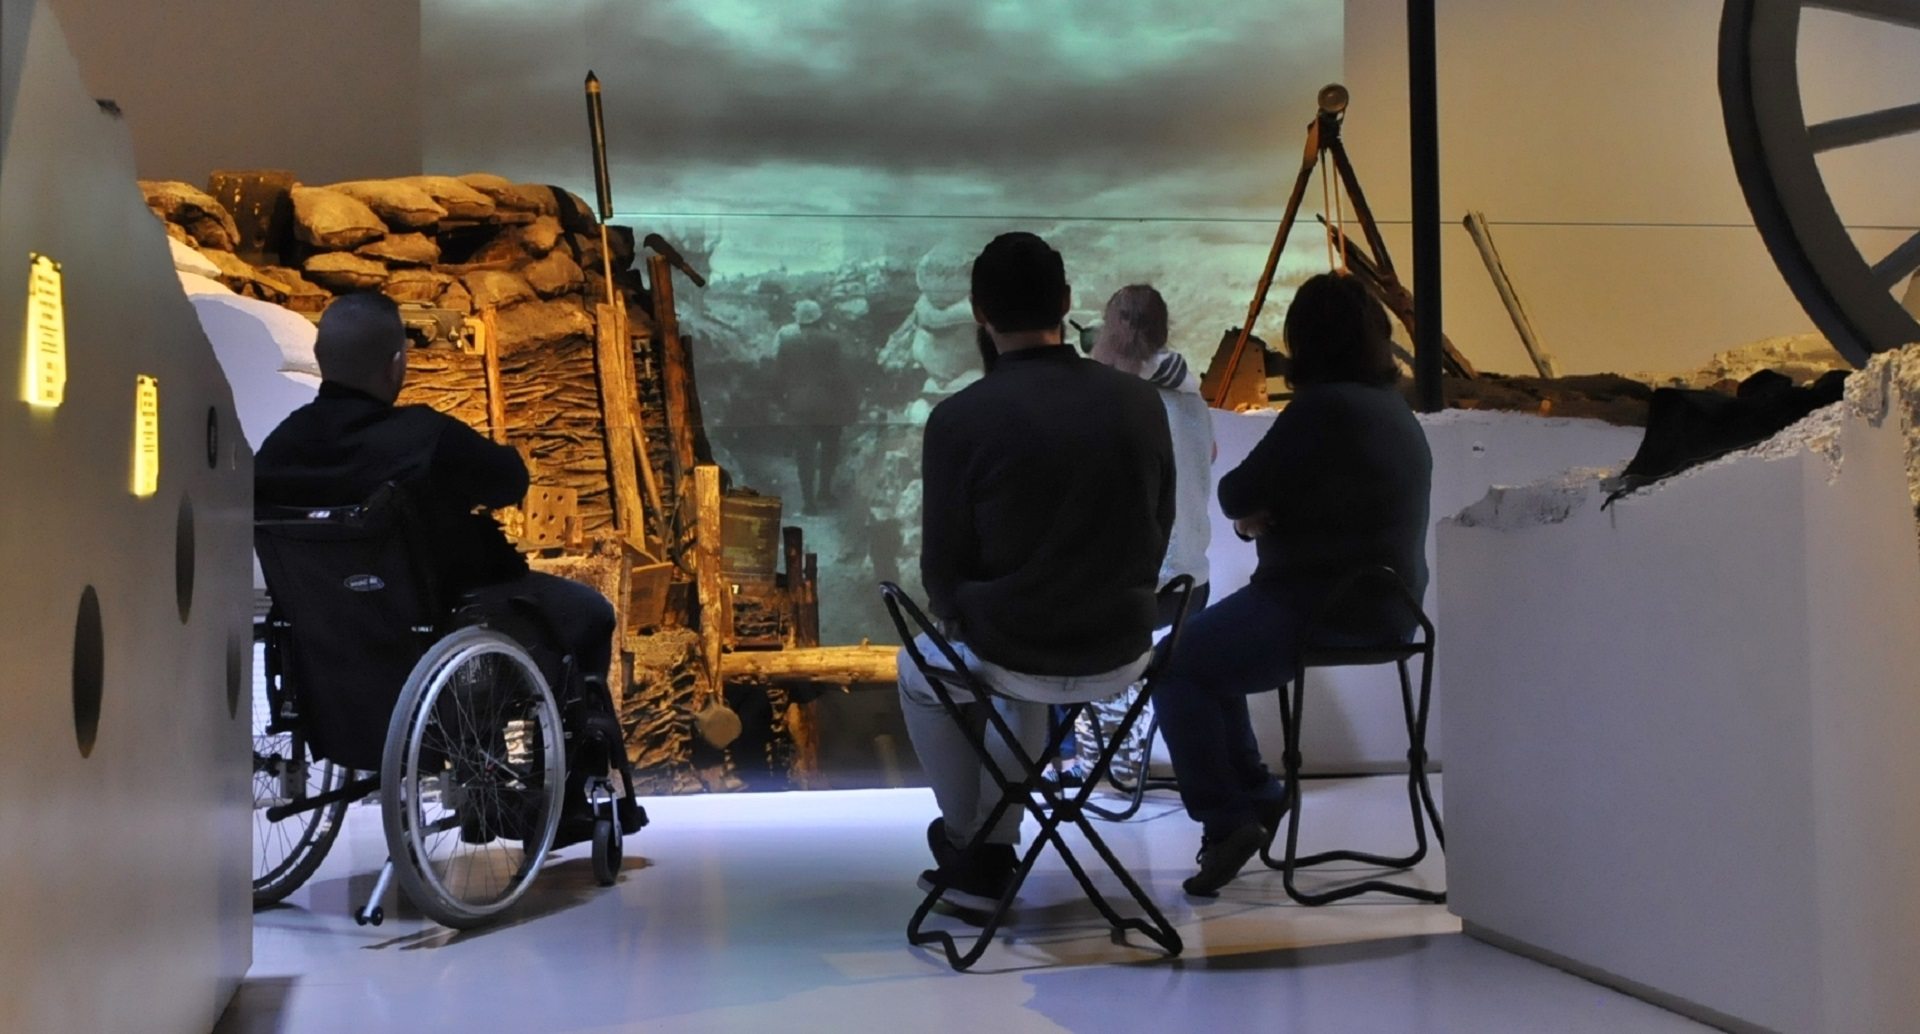 Visiteurs en situation de handicap moteur près de la reconstitution de tranchées au Musée de la Gande Guerre